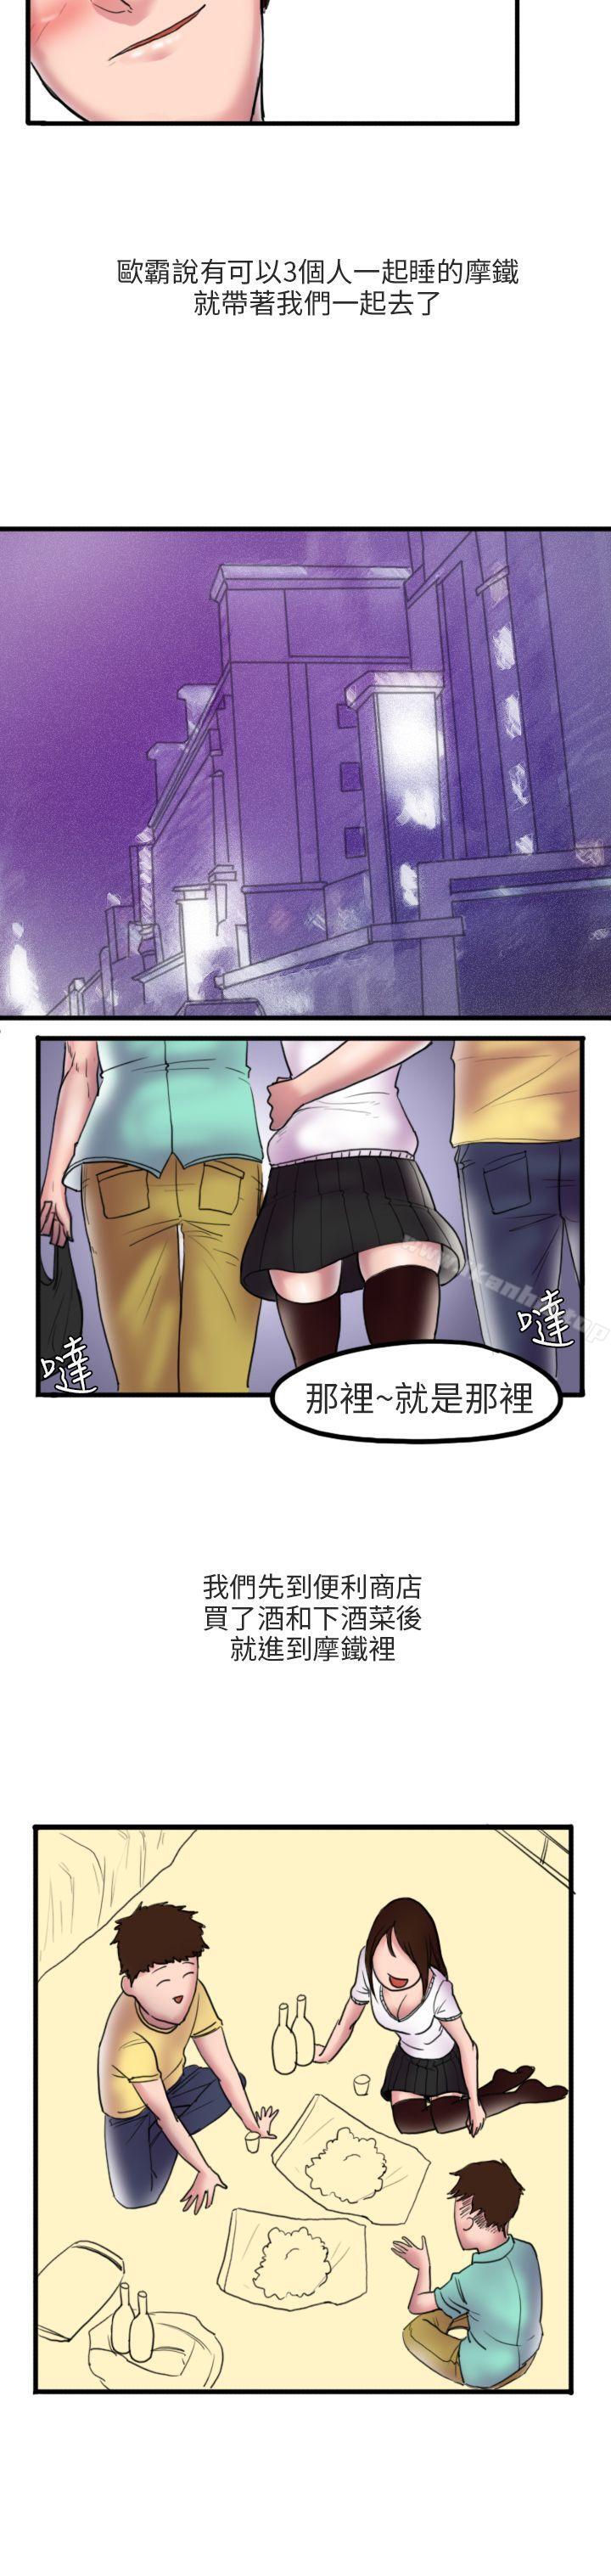 漫画韩国 秘密Story第二季   - 立即阅读 第二季 床與墻壁之間(上)第7漫画图片